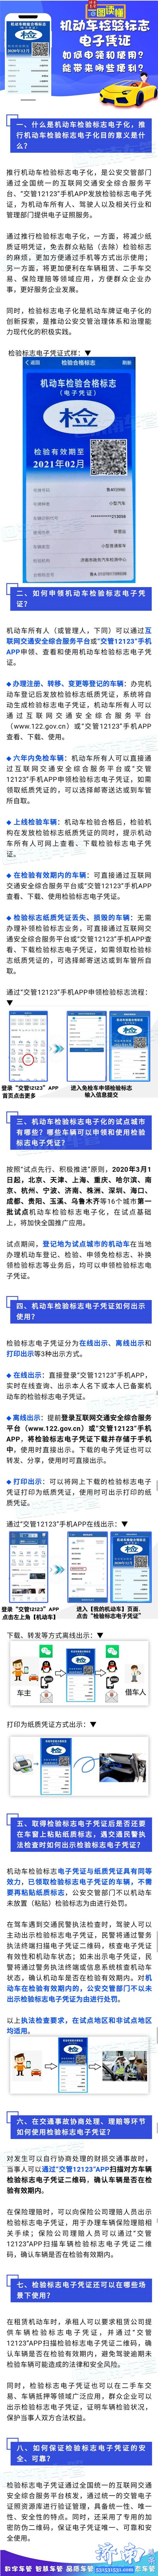 3月1日起济南市启用电子年审标志“交管12123”手机APP申领